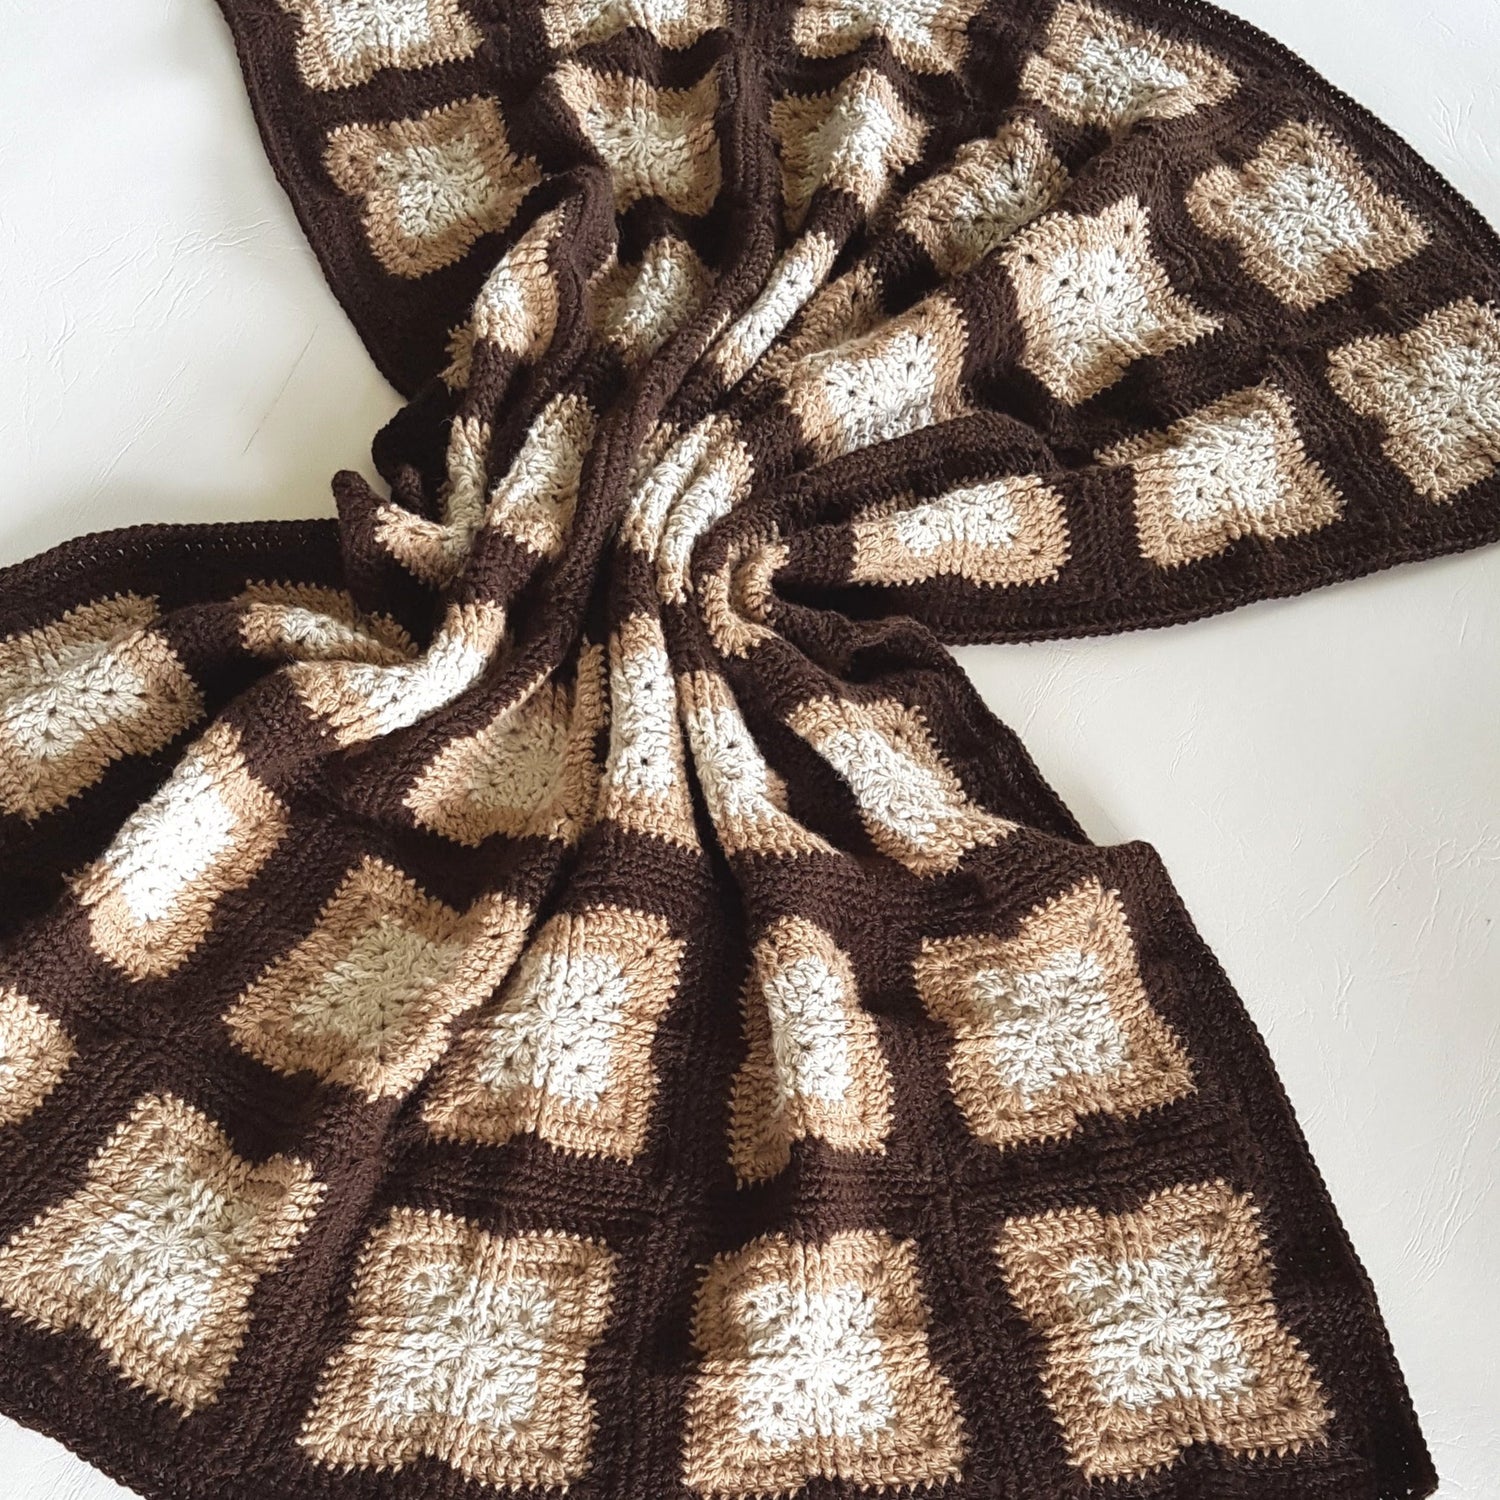 Rumple of Killarney Cross Blanket Pattern by Shelley Husband in browns